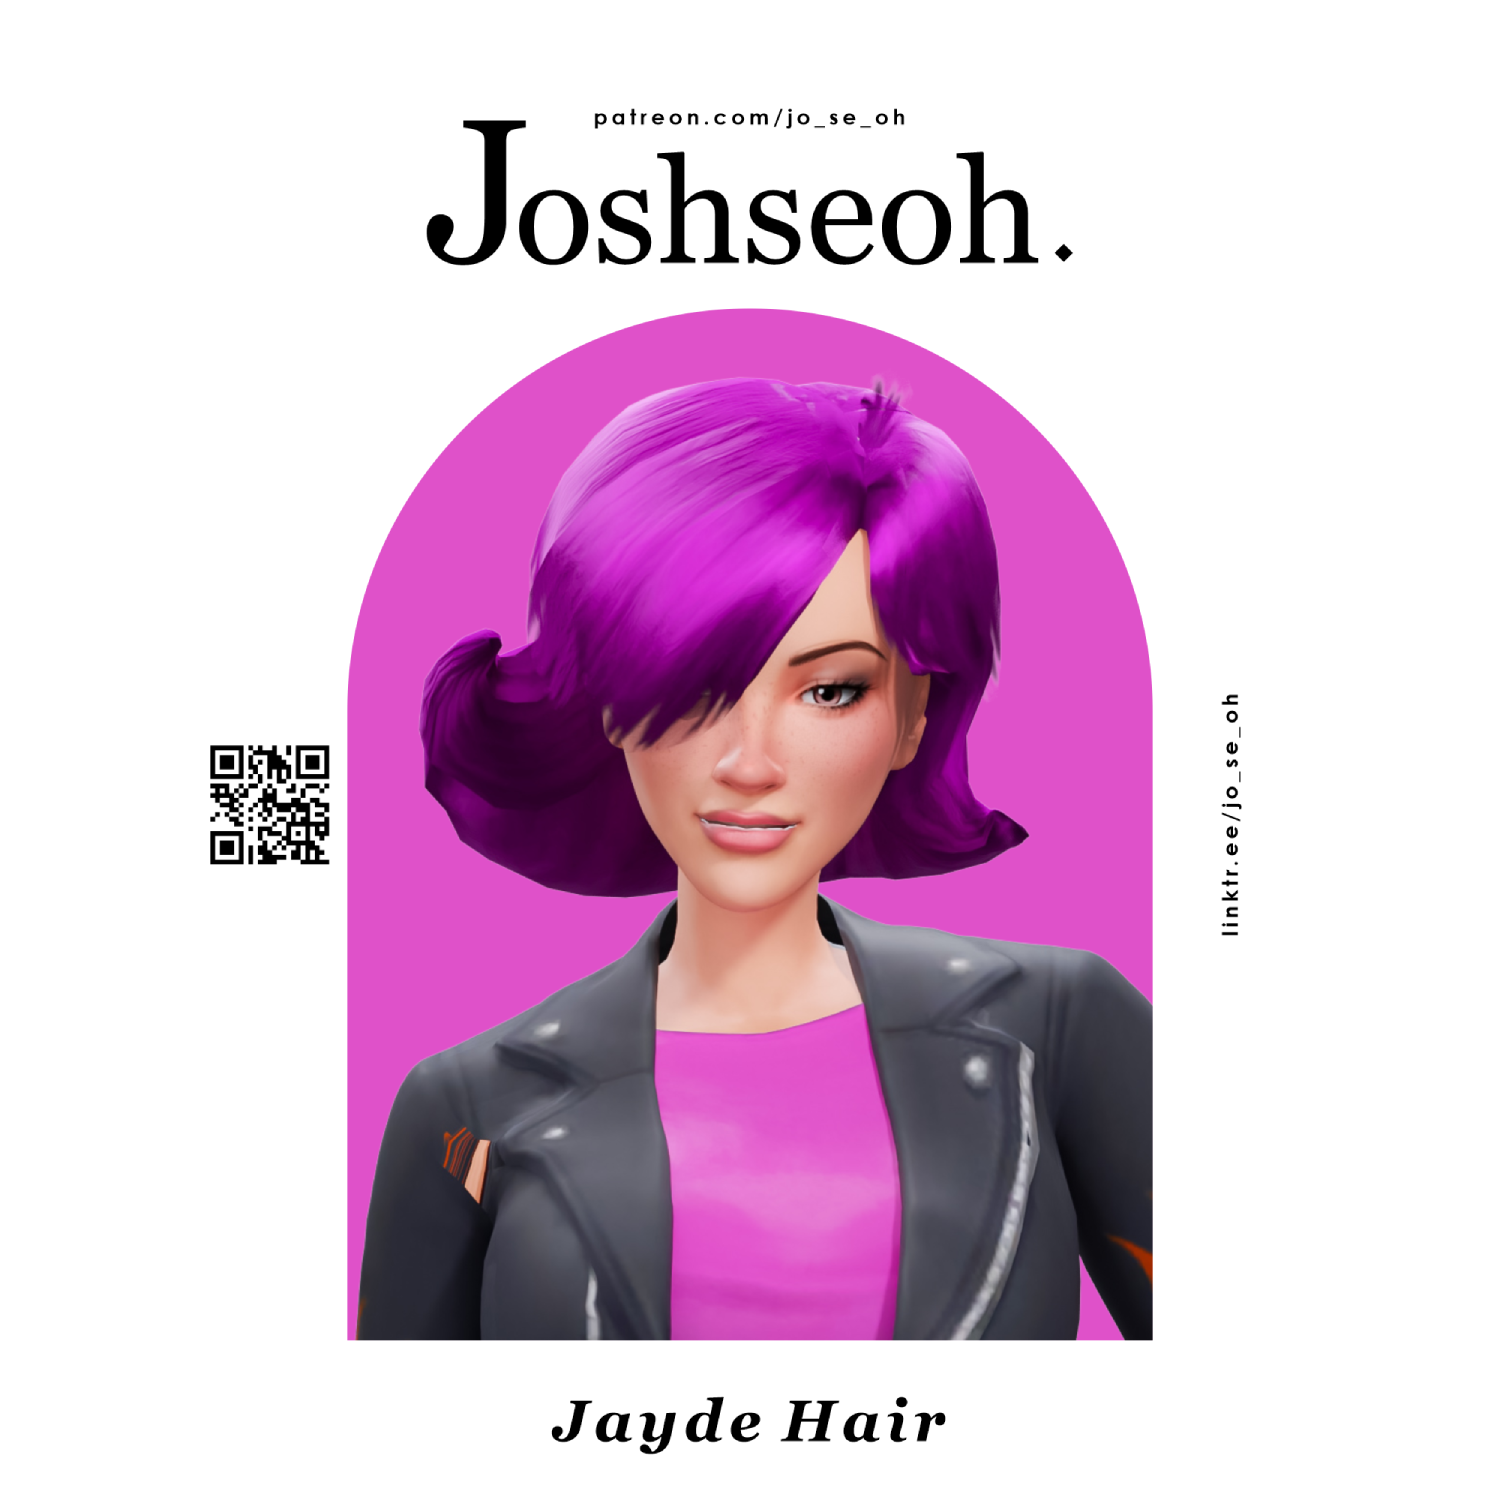 Jayde Hair - The Sims 4 Create a Sim - CurseForge